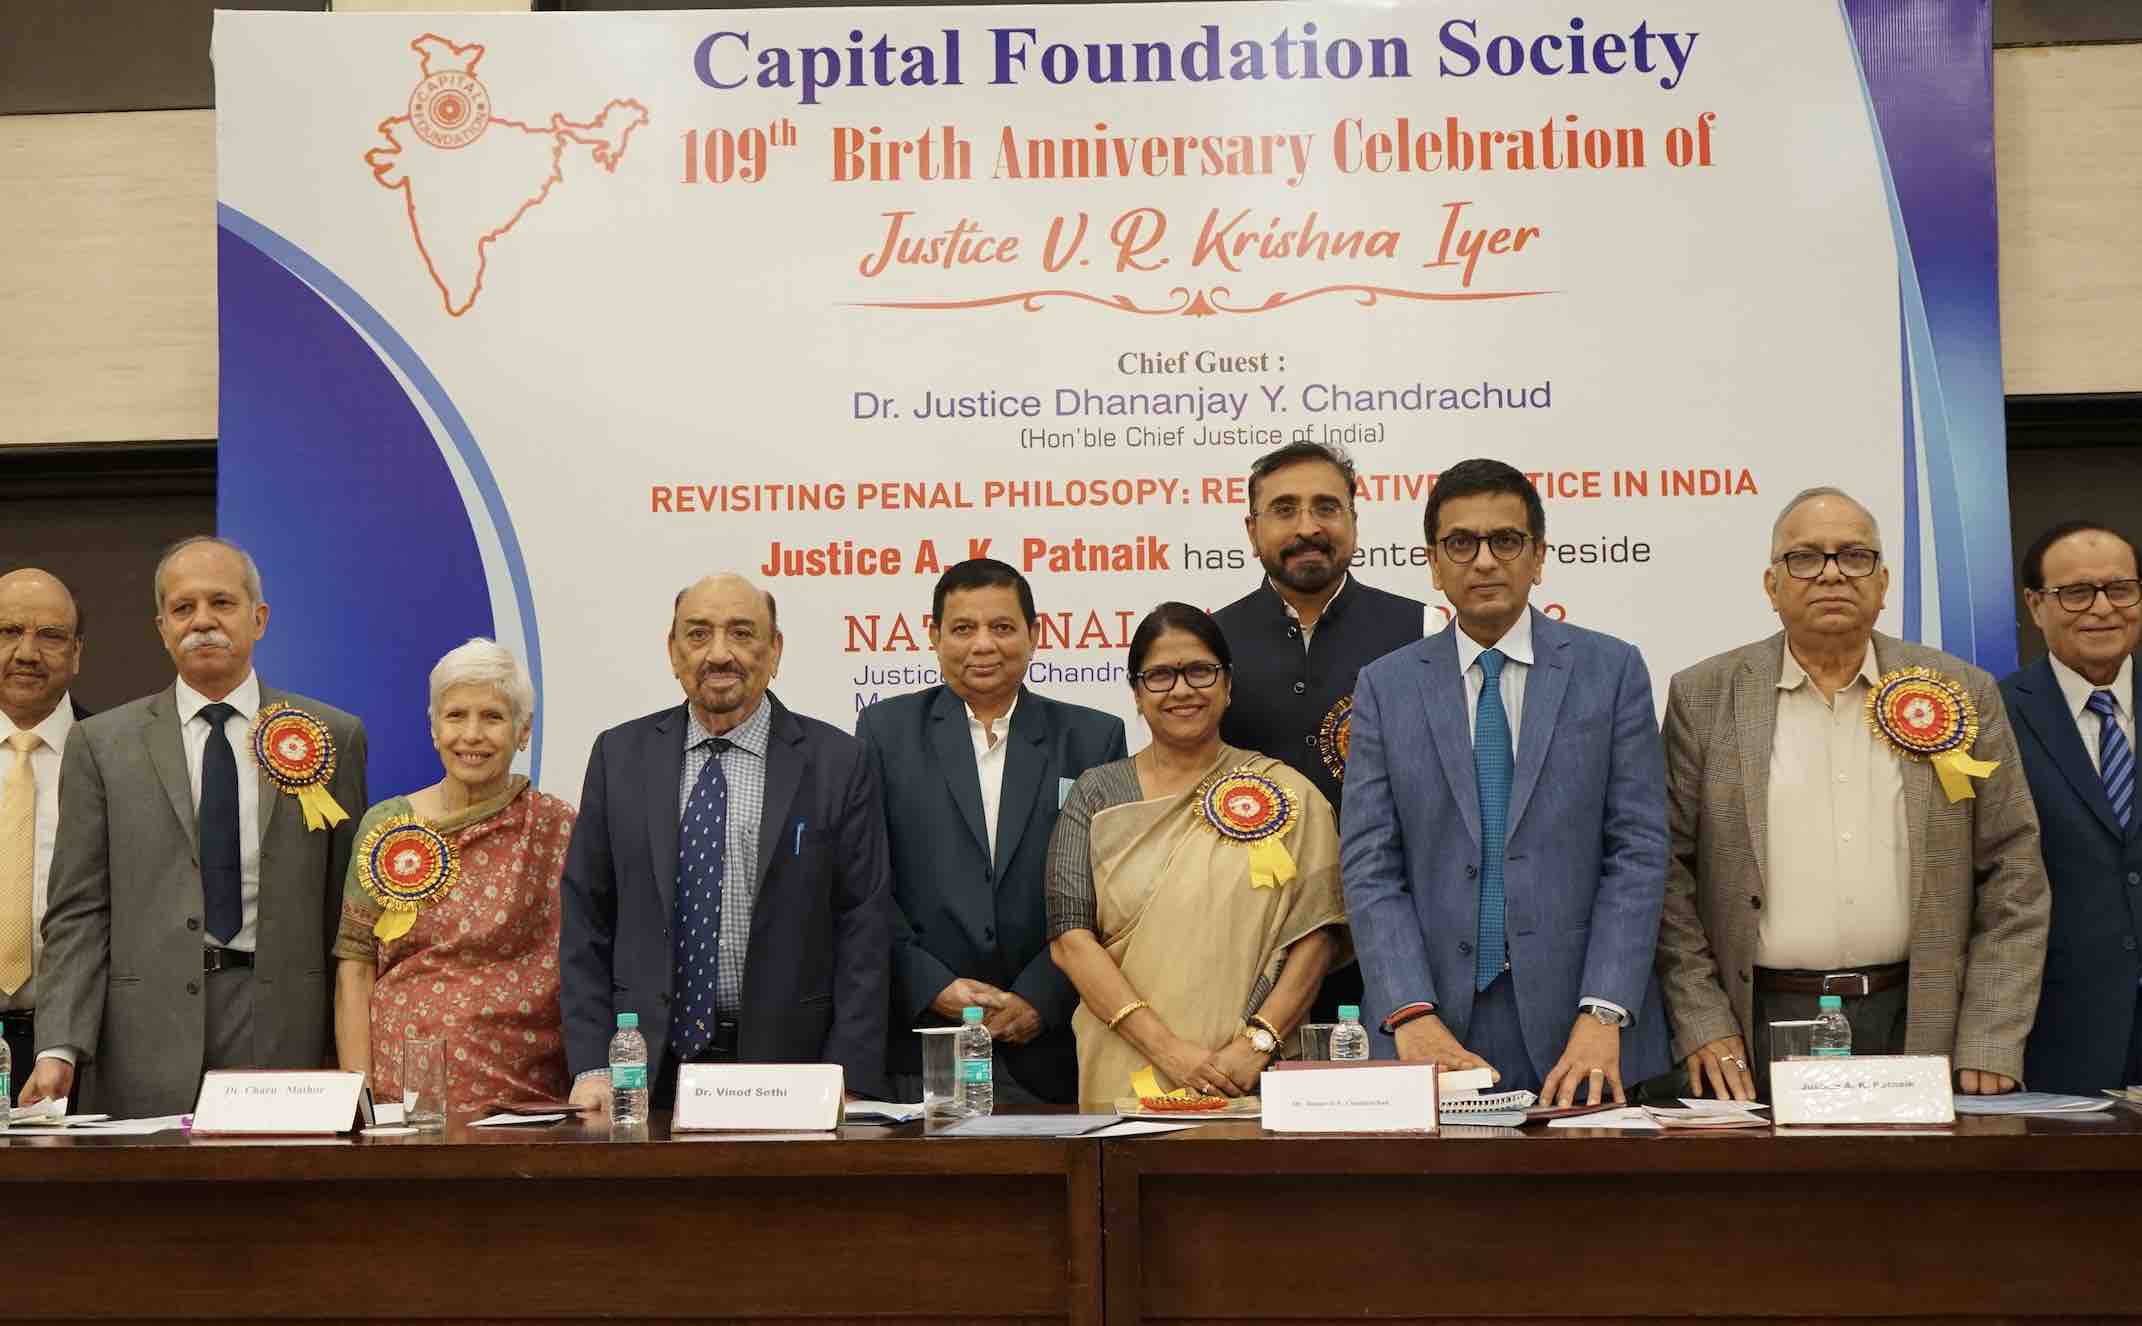 Odisha's Silpi Sahoo And Prof CBK Mohanty Conferred With Prestigious Capital Foundation Awards